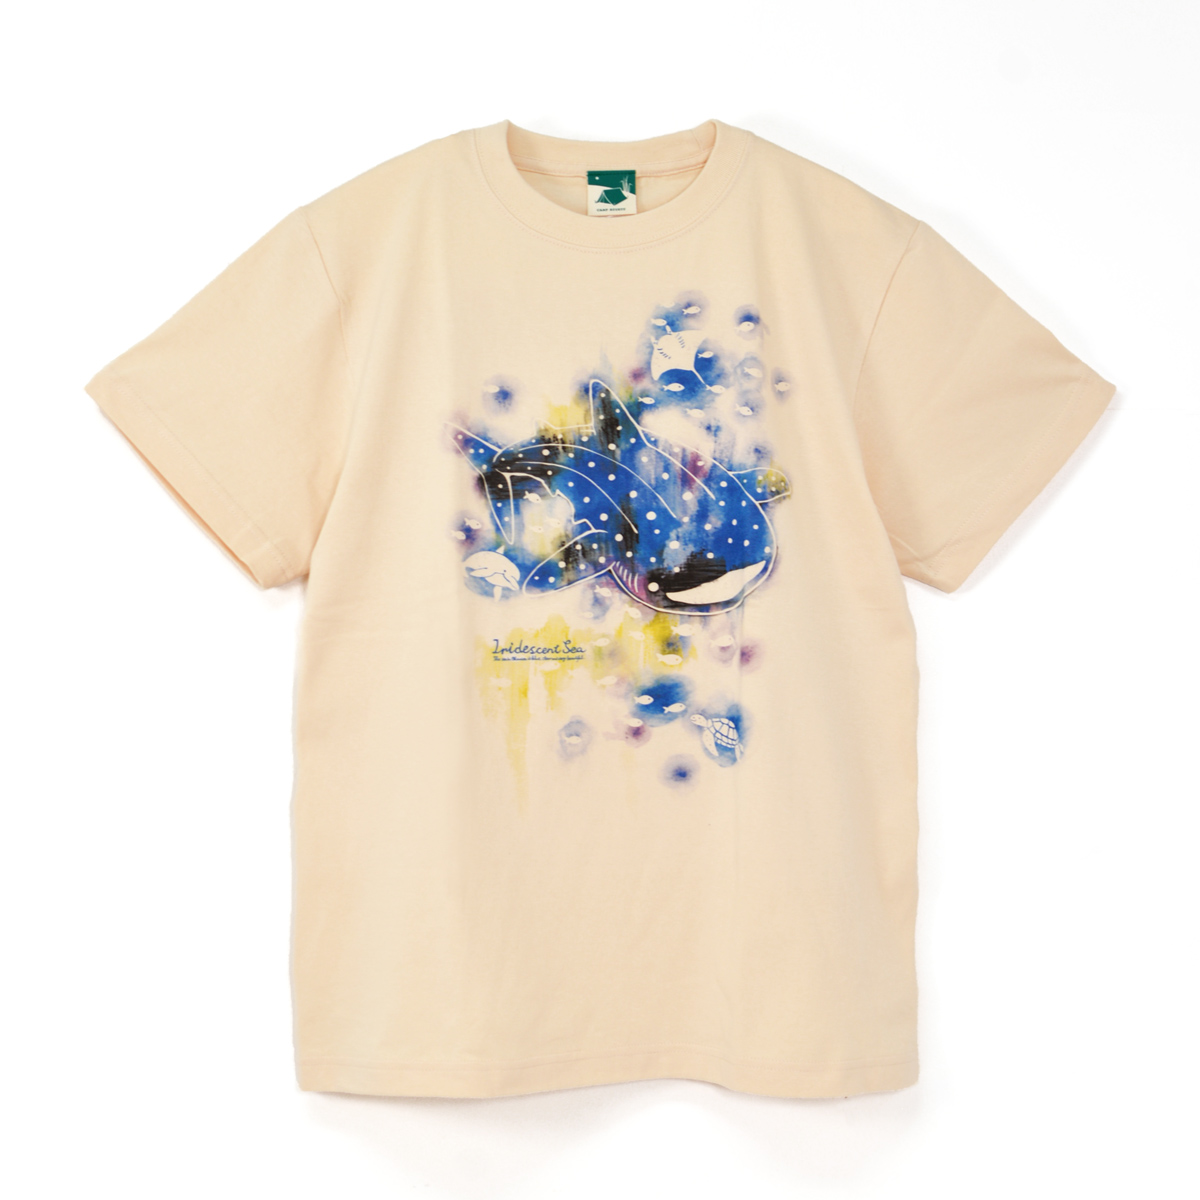 沖縄Tシャツ・かりゆしウェア 通販サイト【 Tシャツ屋ドットコム 】